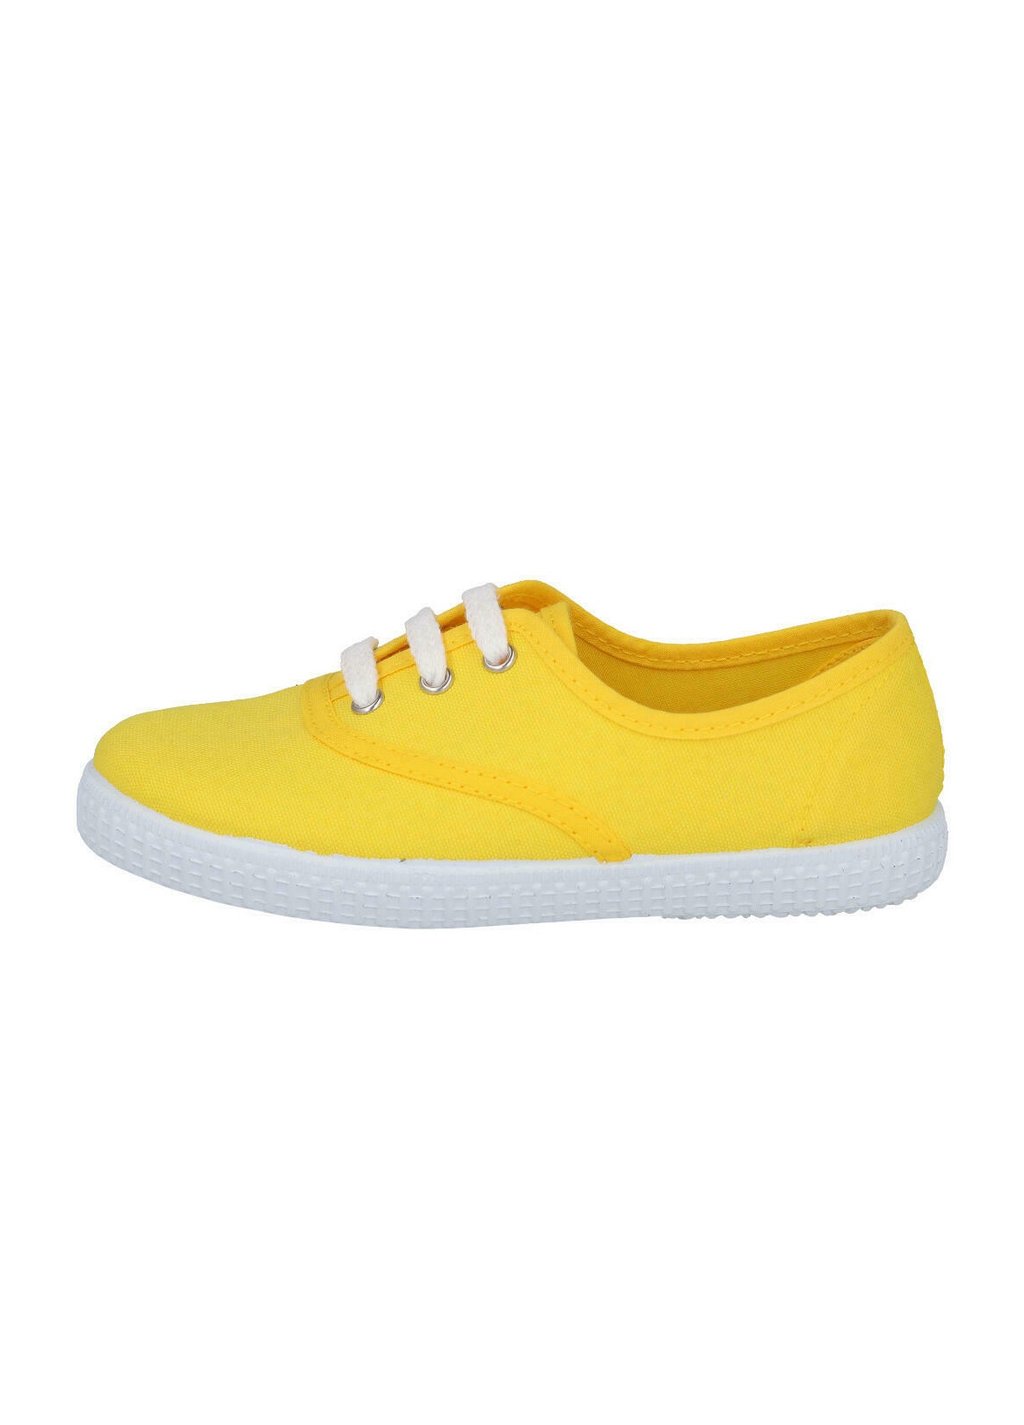 Детская обувь UNISEX Batilas, желтый